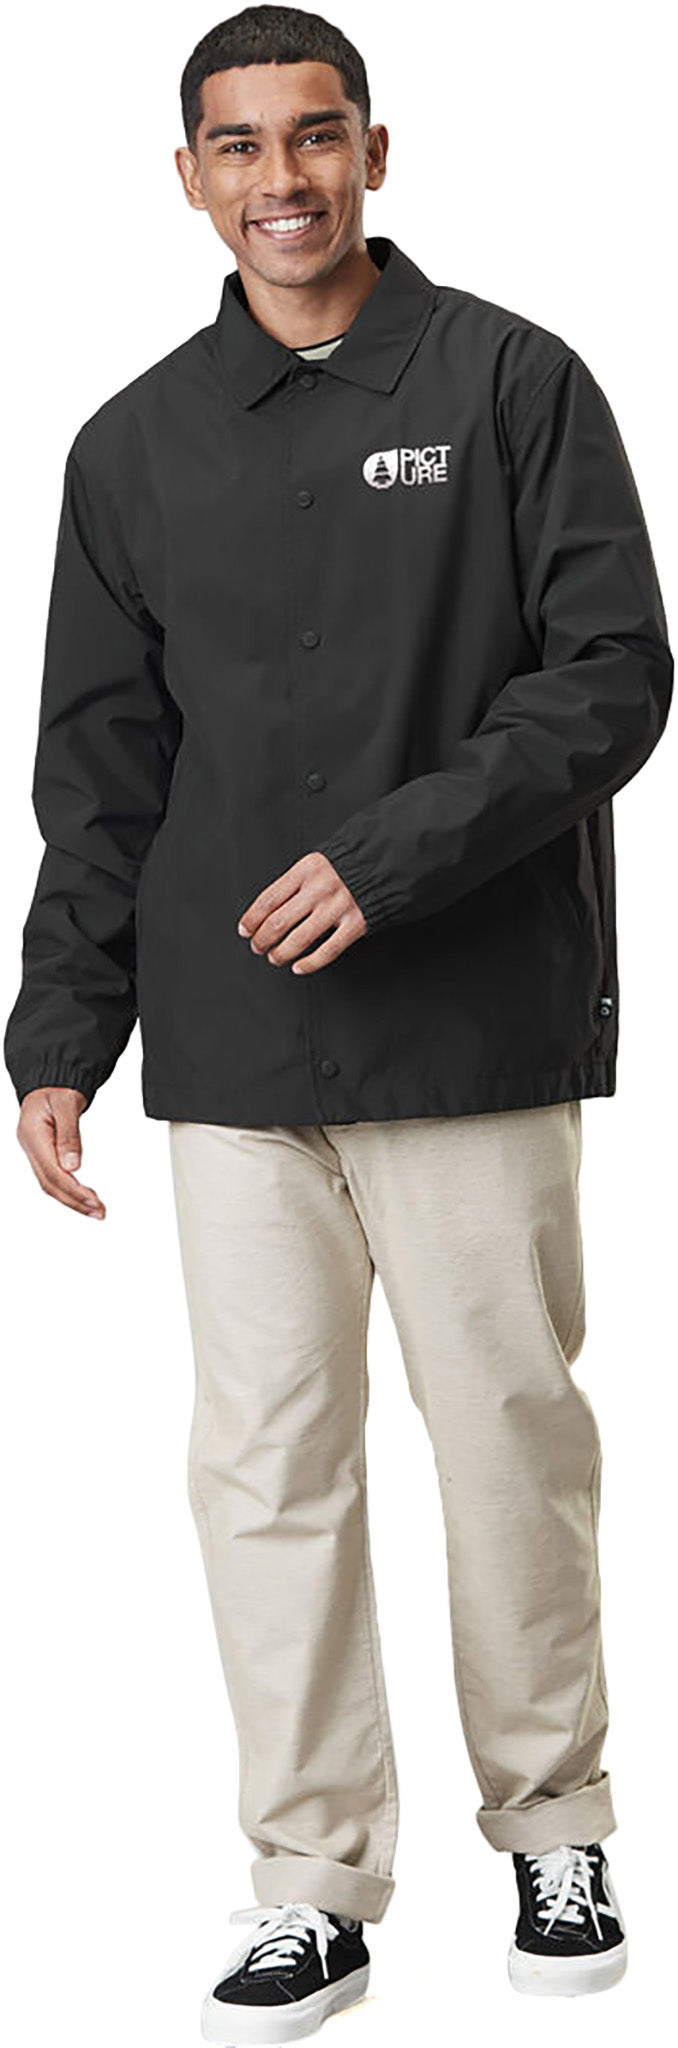 Columbia Back Bowl Full zip Fleece Sweatshirt - Men's